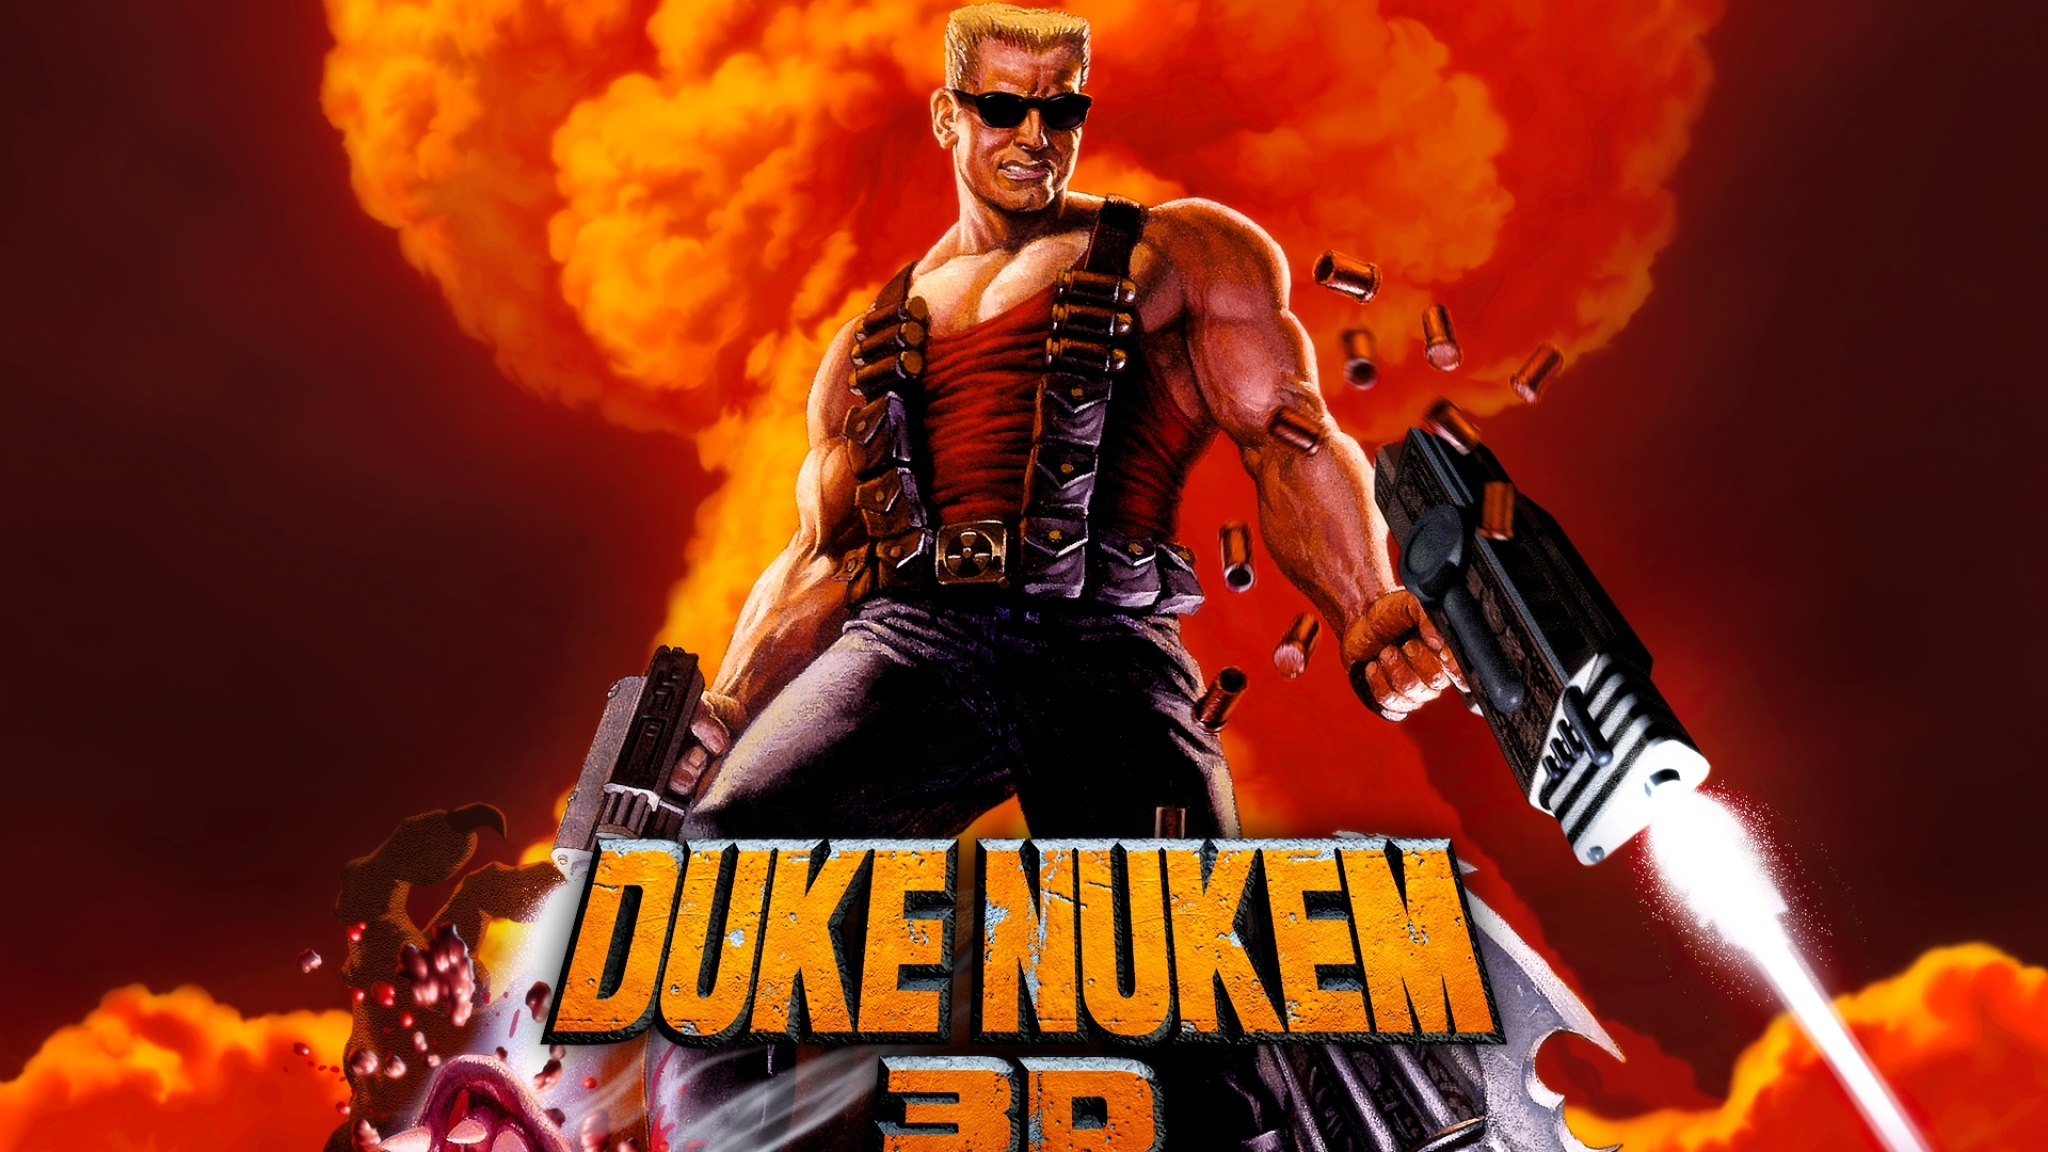 Аватарки старых игр. Duke Nukem 3d. Дольф Лундгрен Дюк Нюкем. Duke Nukem 3d обложка. Игра Дюк Нюкем 3д.